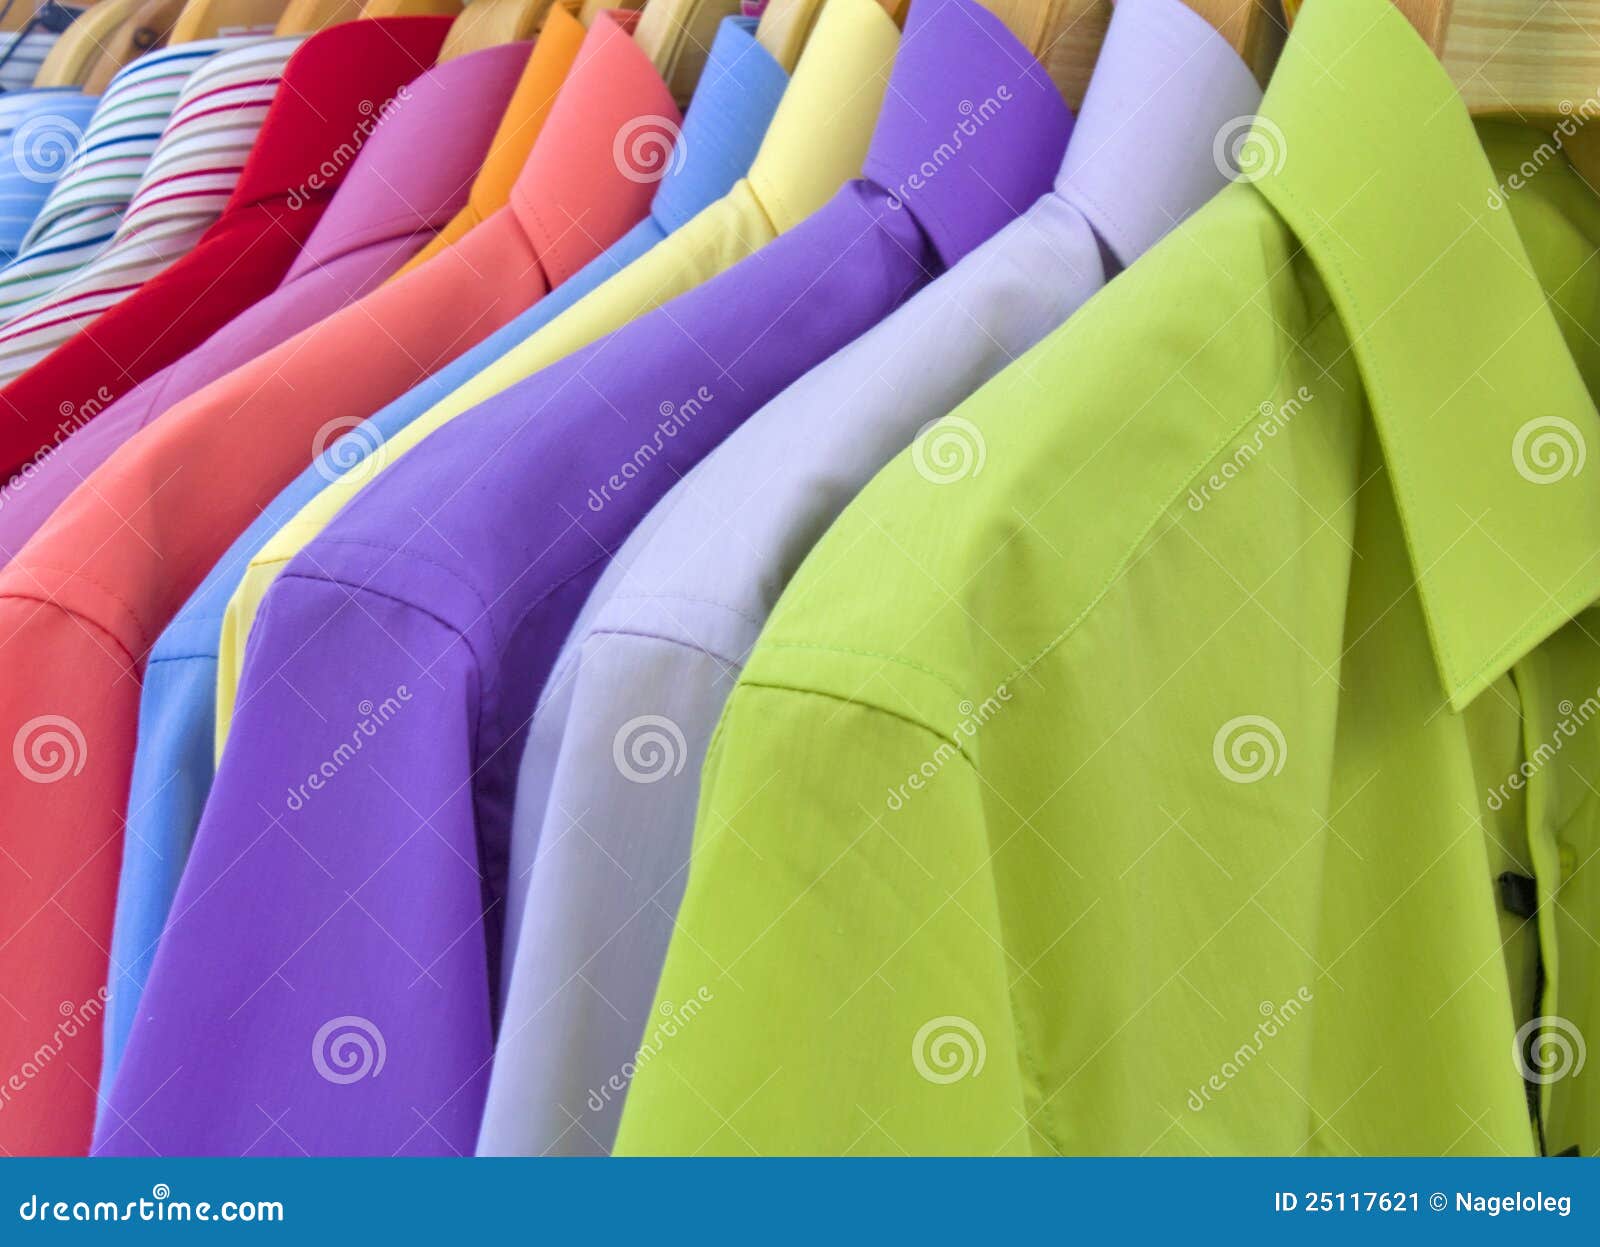 Kolorowe koszula na stojaku w sklepie